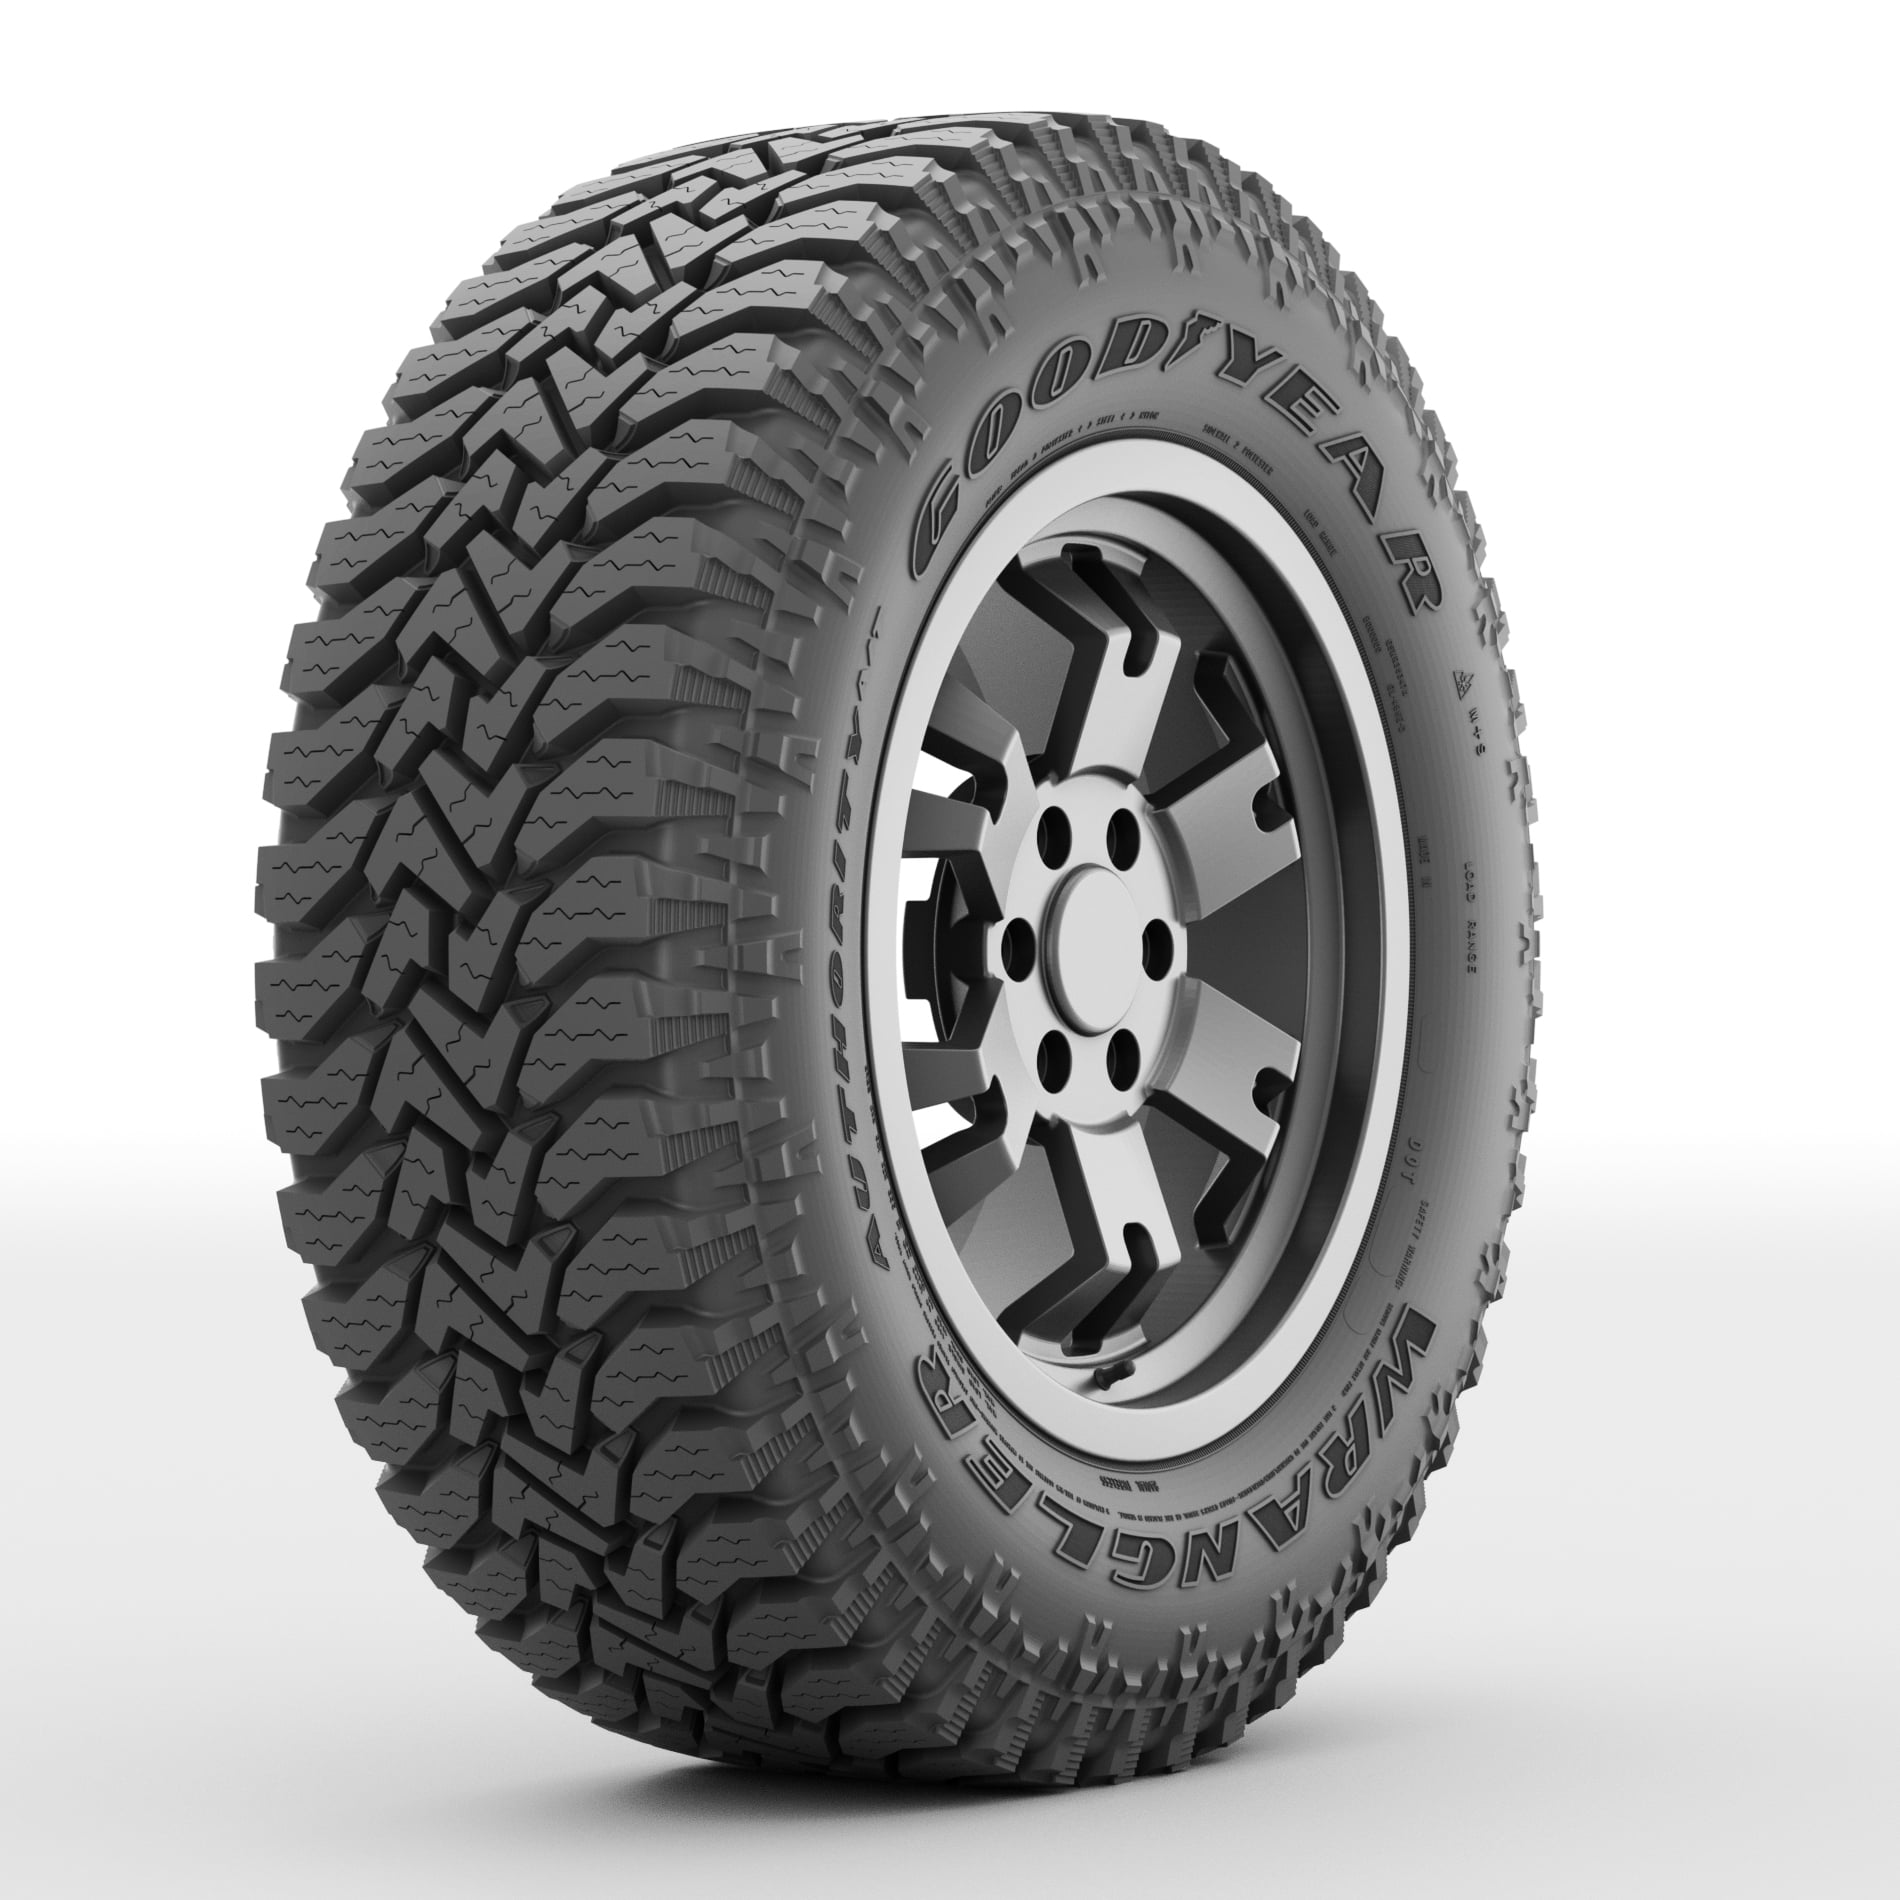 A/T All-Terrain Authority Goodyear Tire LT265/75R16 Wrangler 123Q